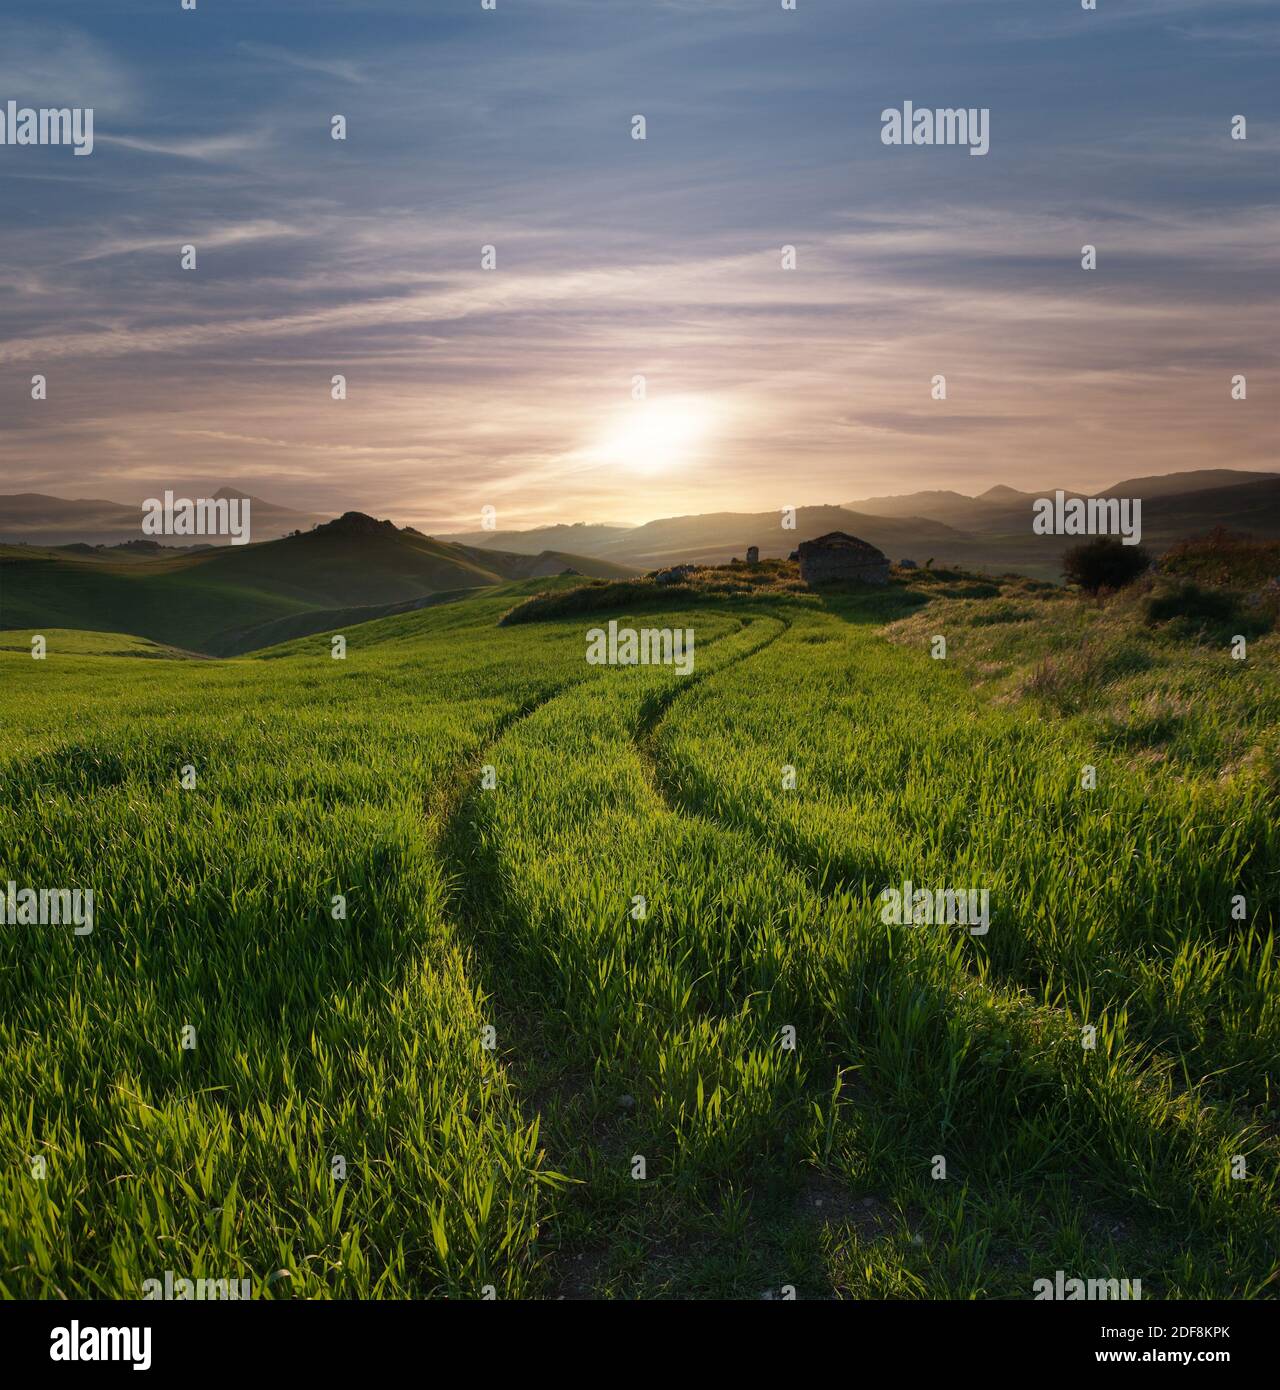 sentiero tortuoso attraverso un campo di erba verde contro le nuvole di cirrus del cielo al tramonto Foto Stock